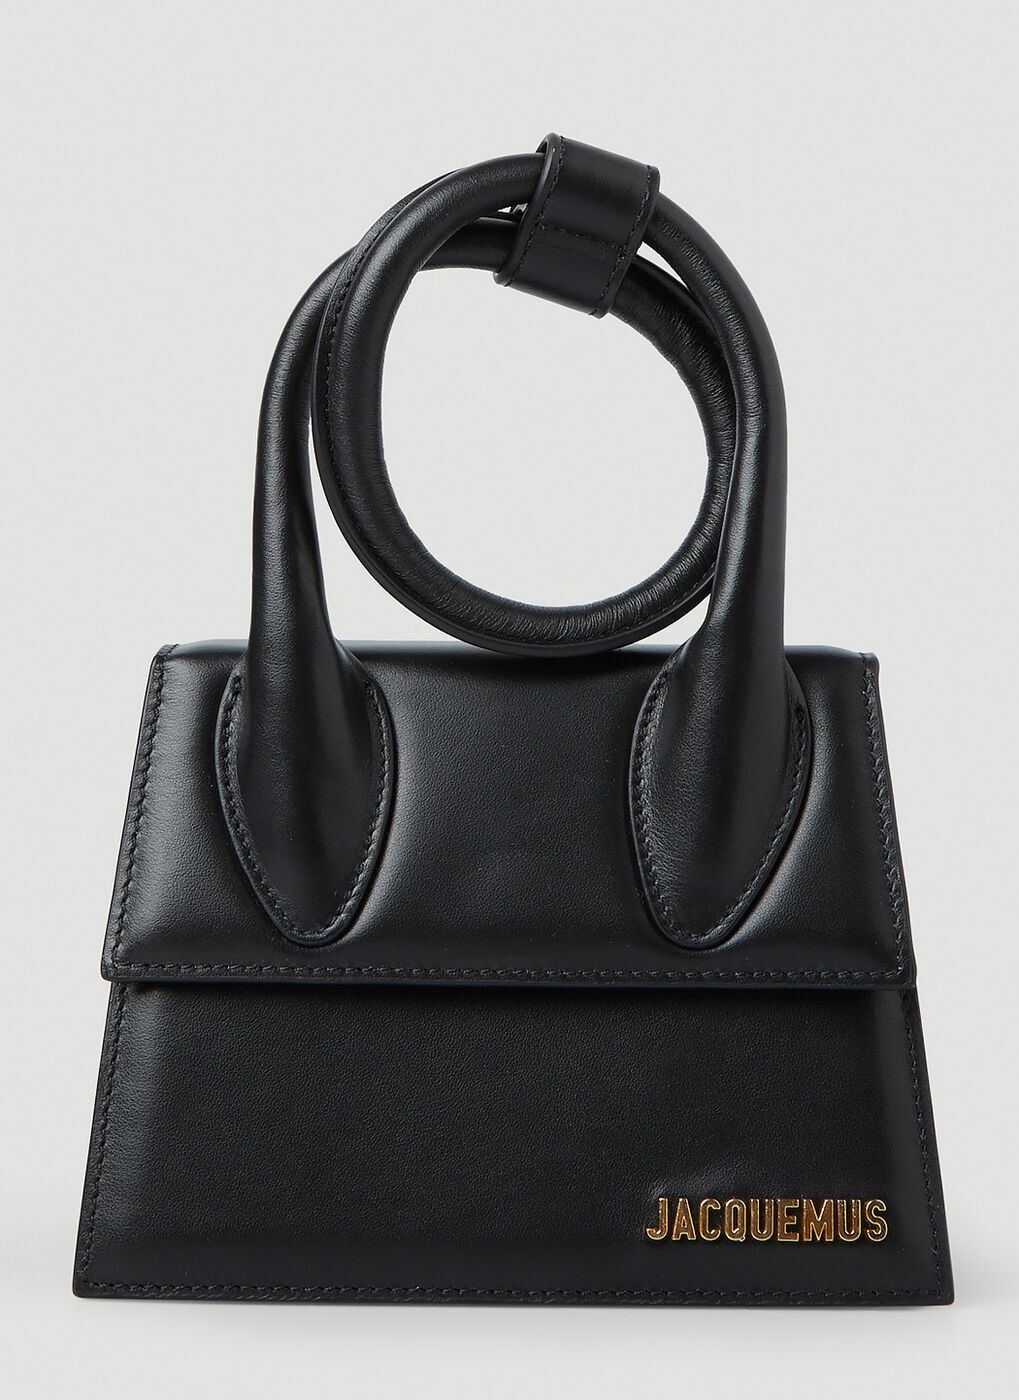 Jacquemus - Le Chiquito Medium Handbag in Black Jacquemus